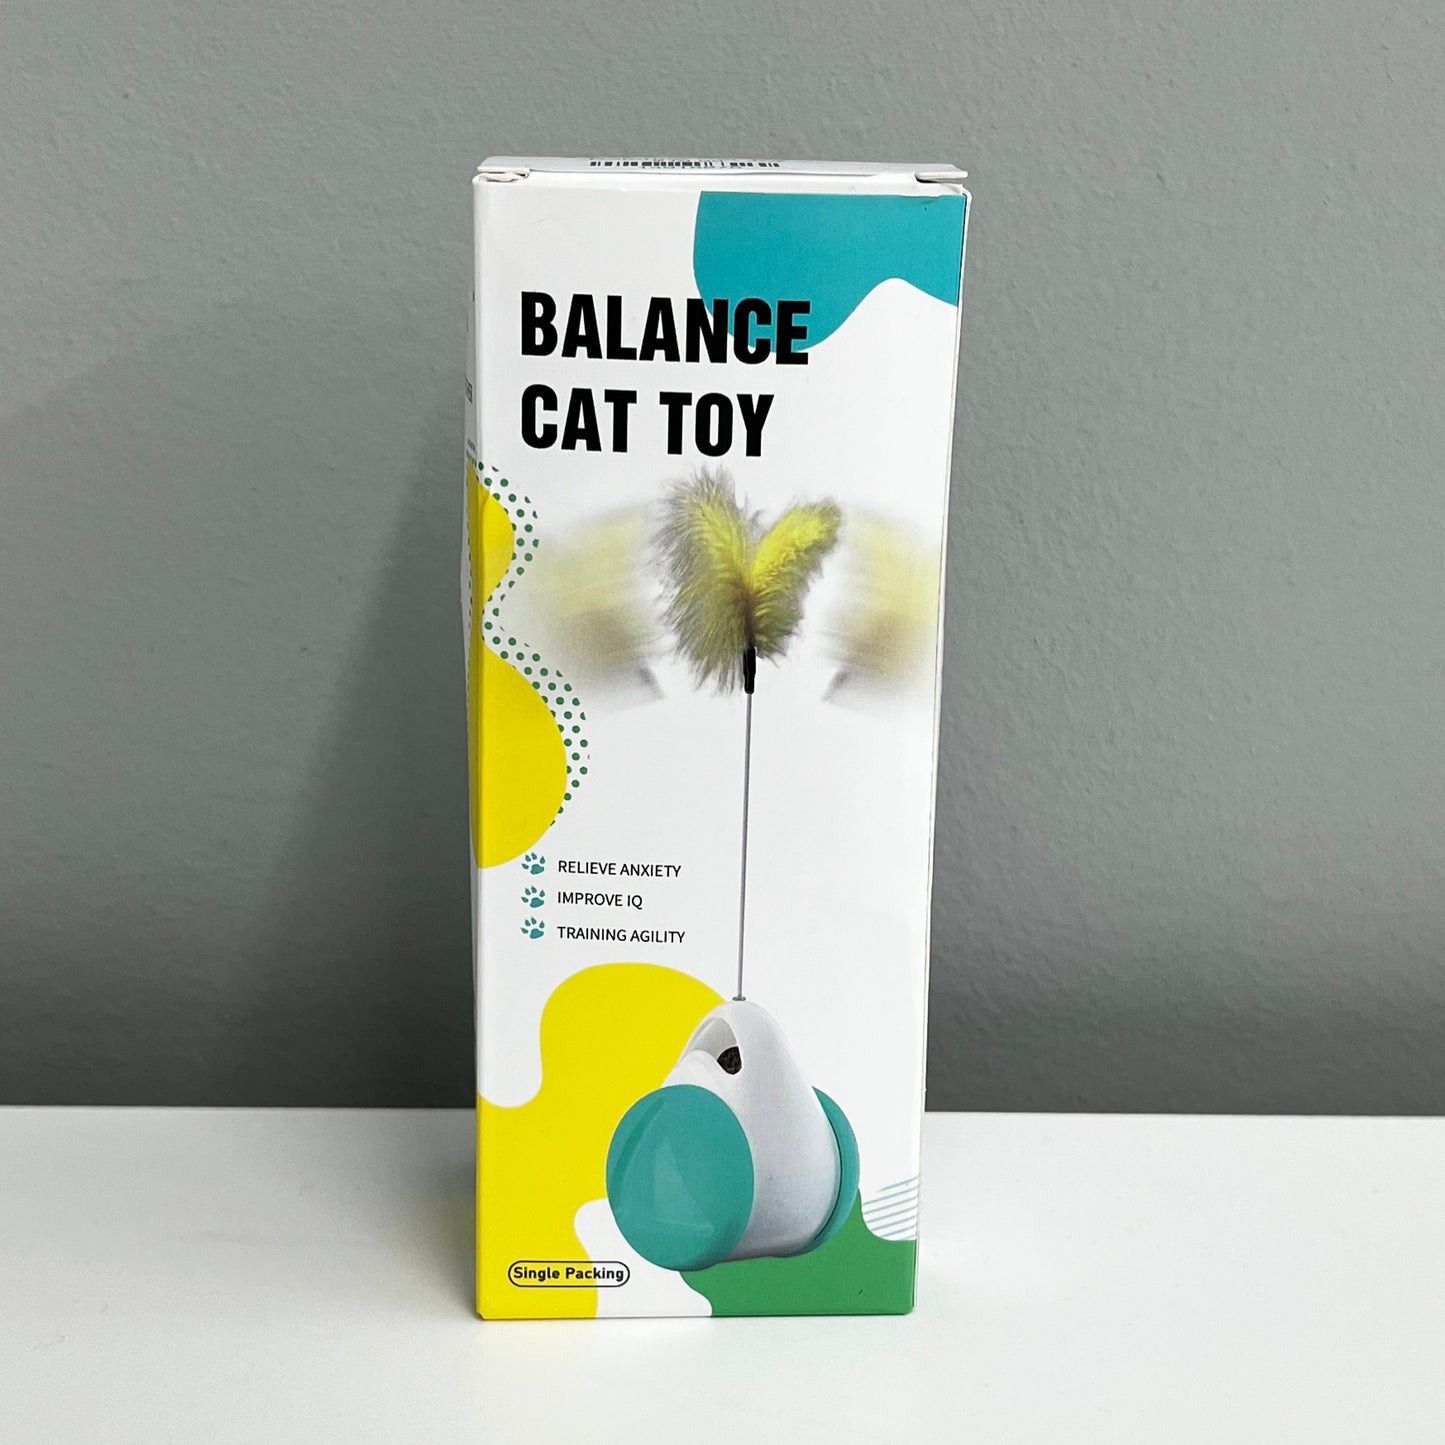 Balance Cat Toy